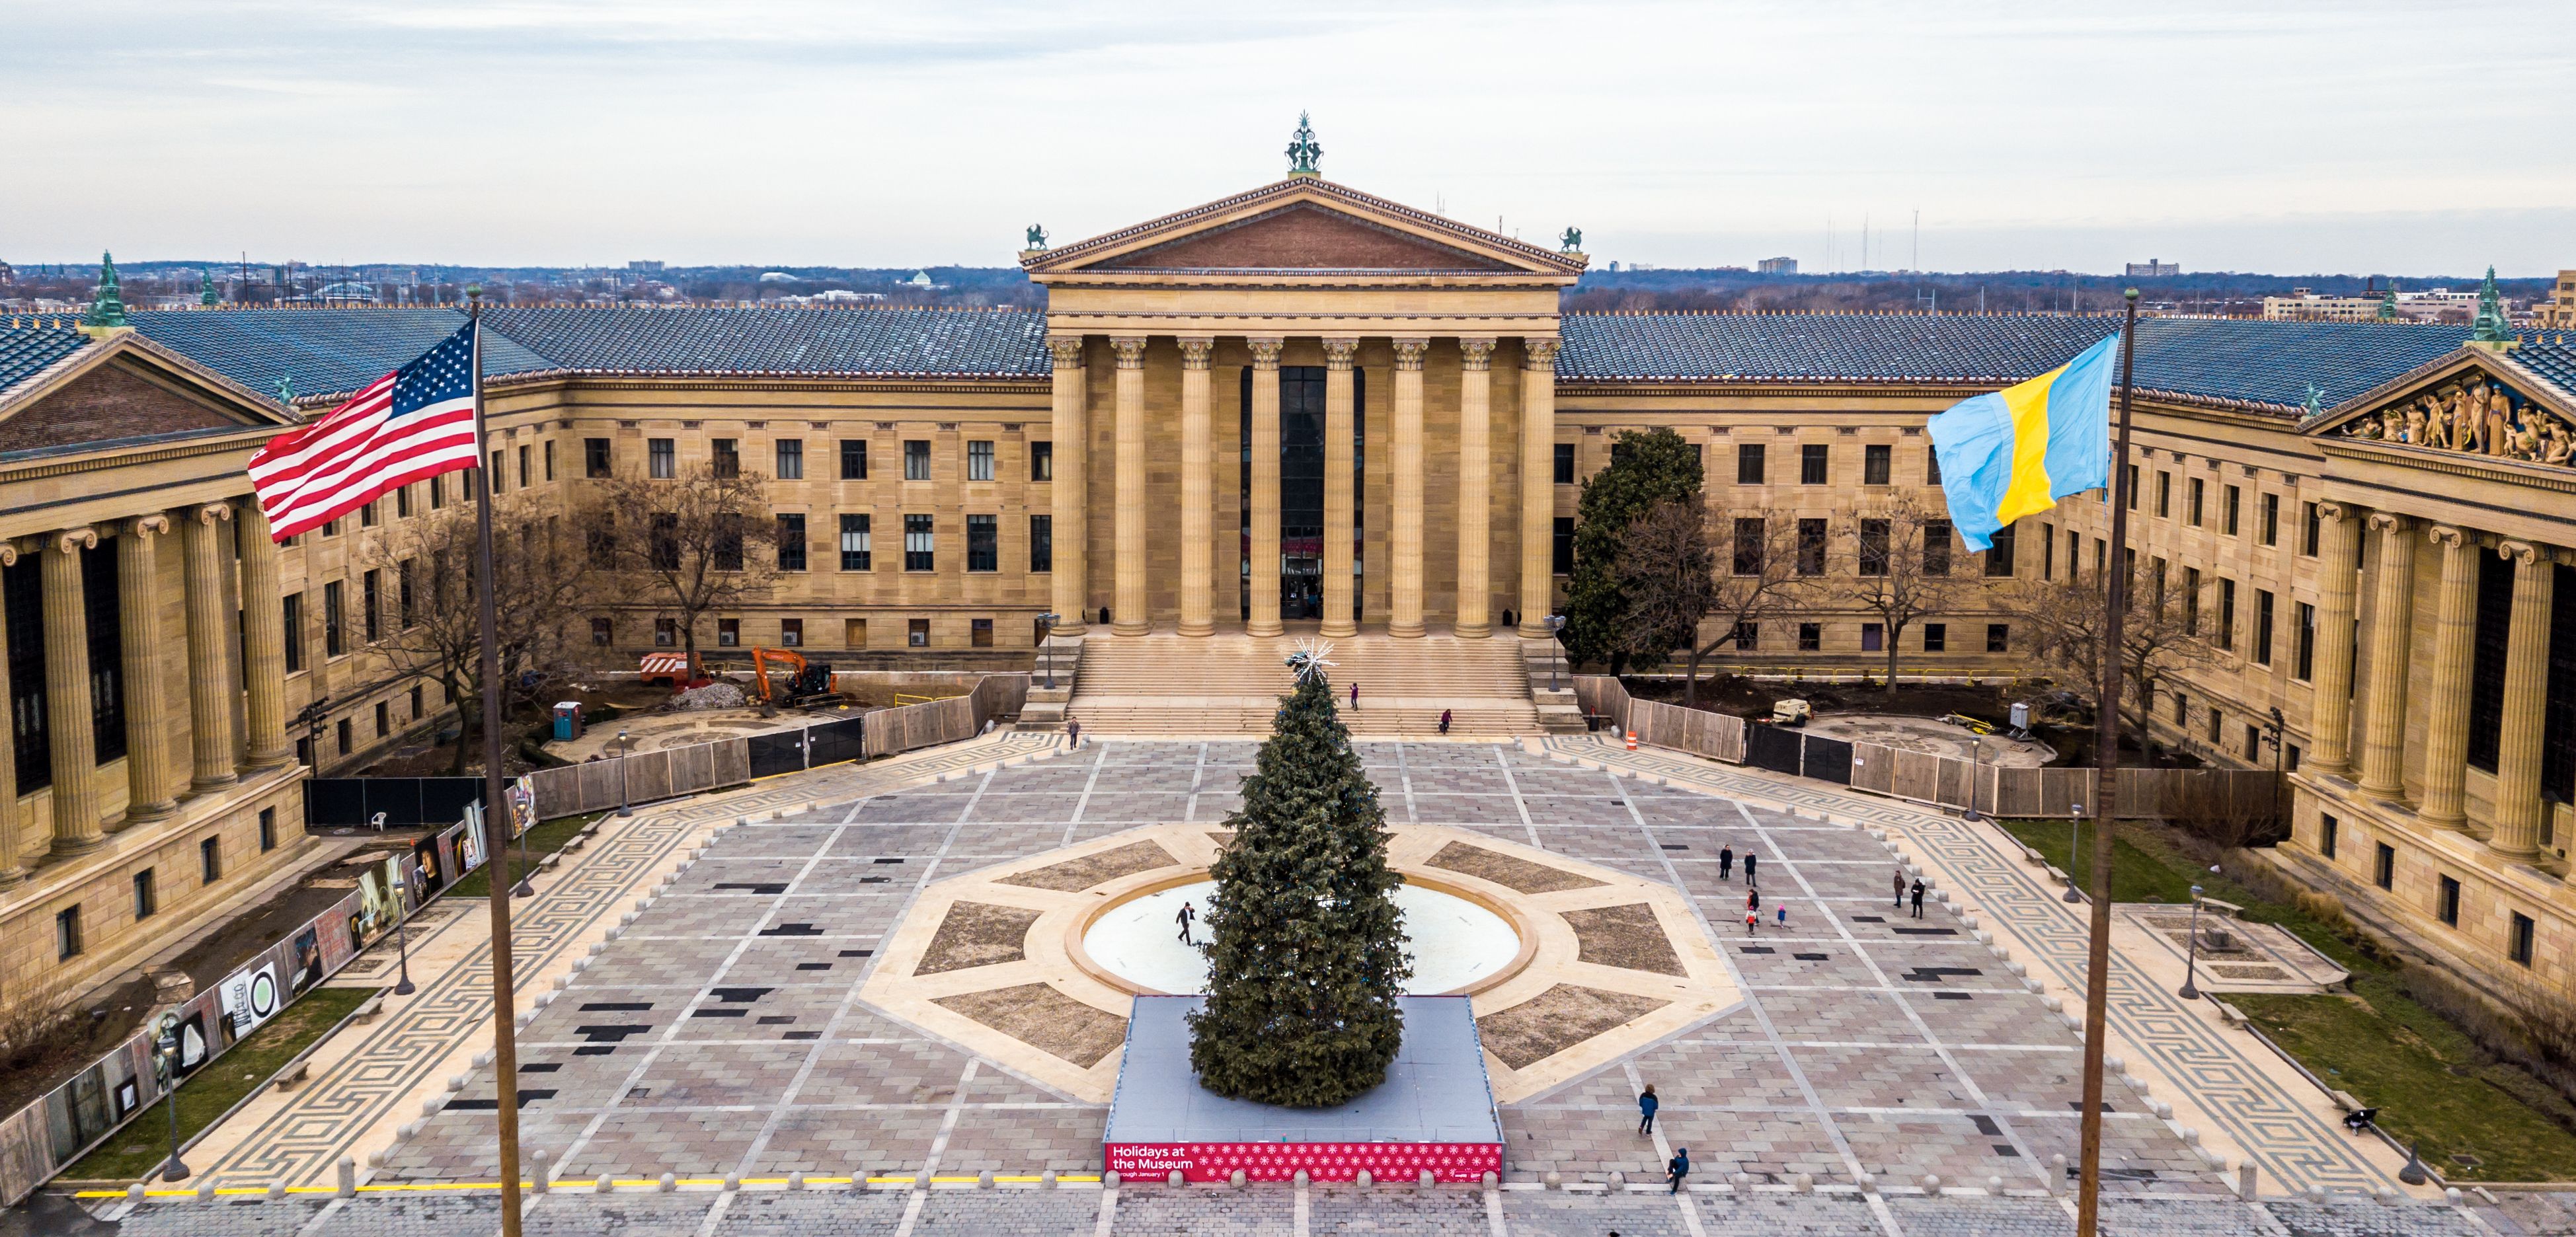 Philadelphia Museum of Art, main entrance